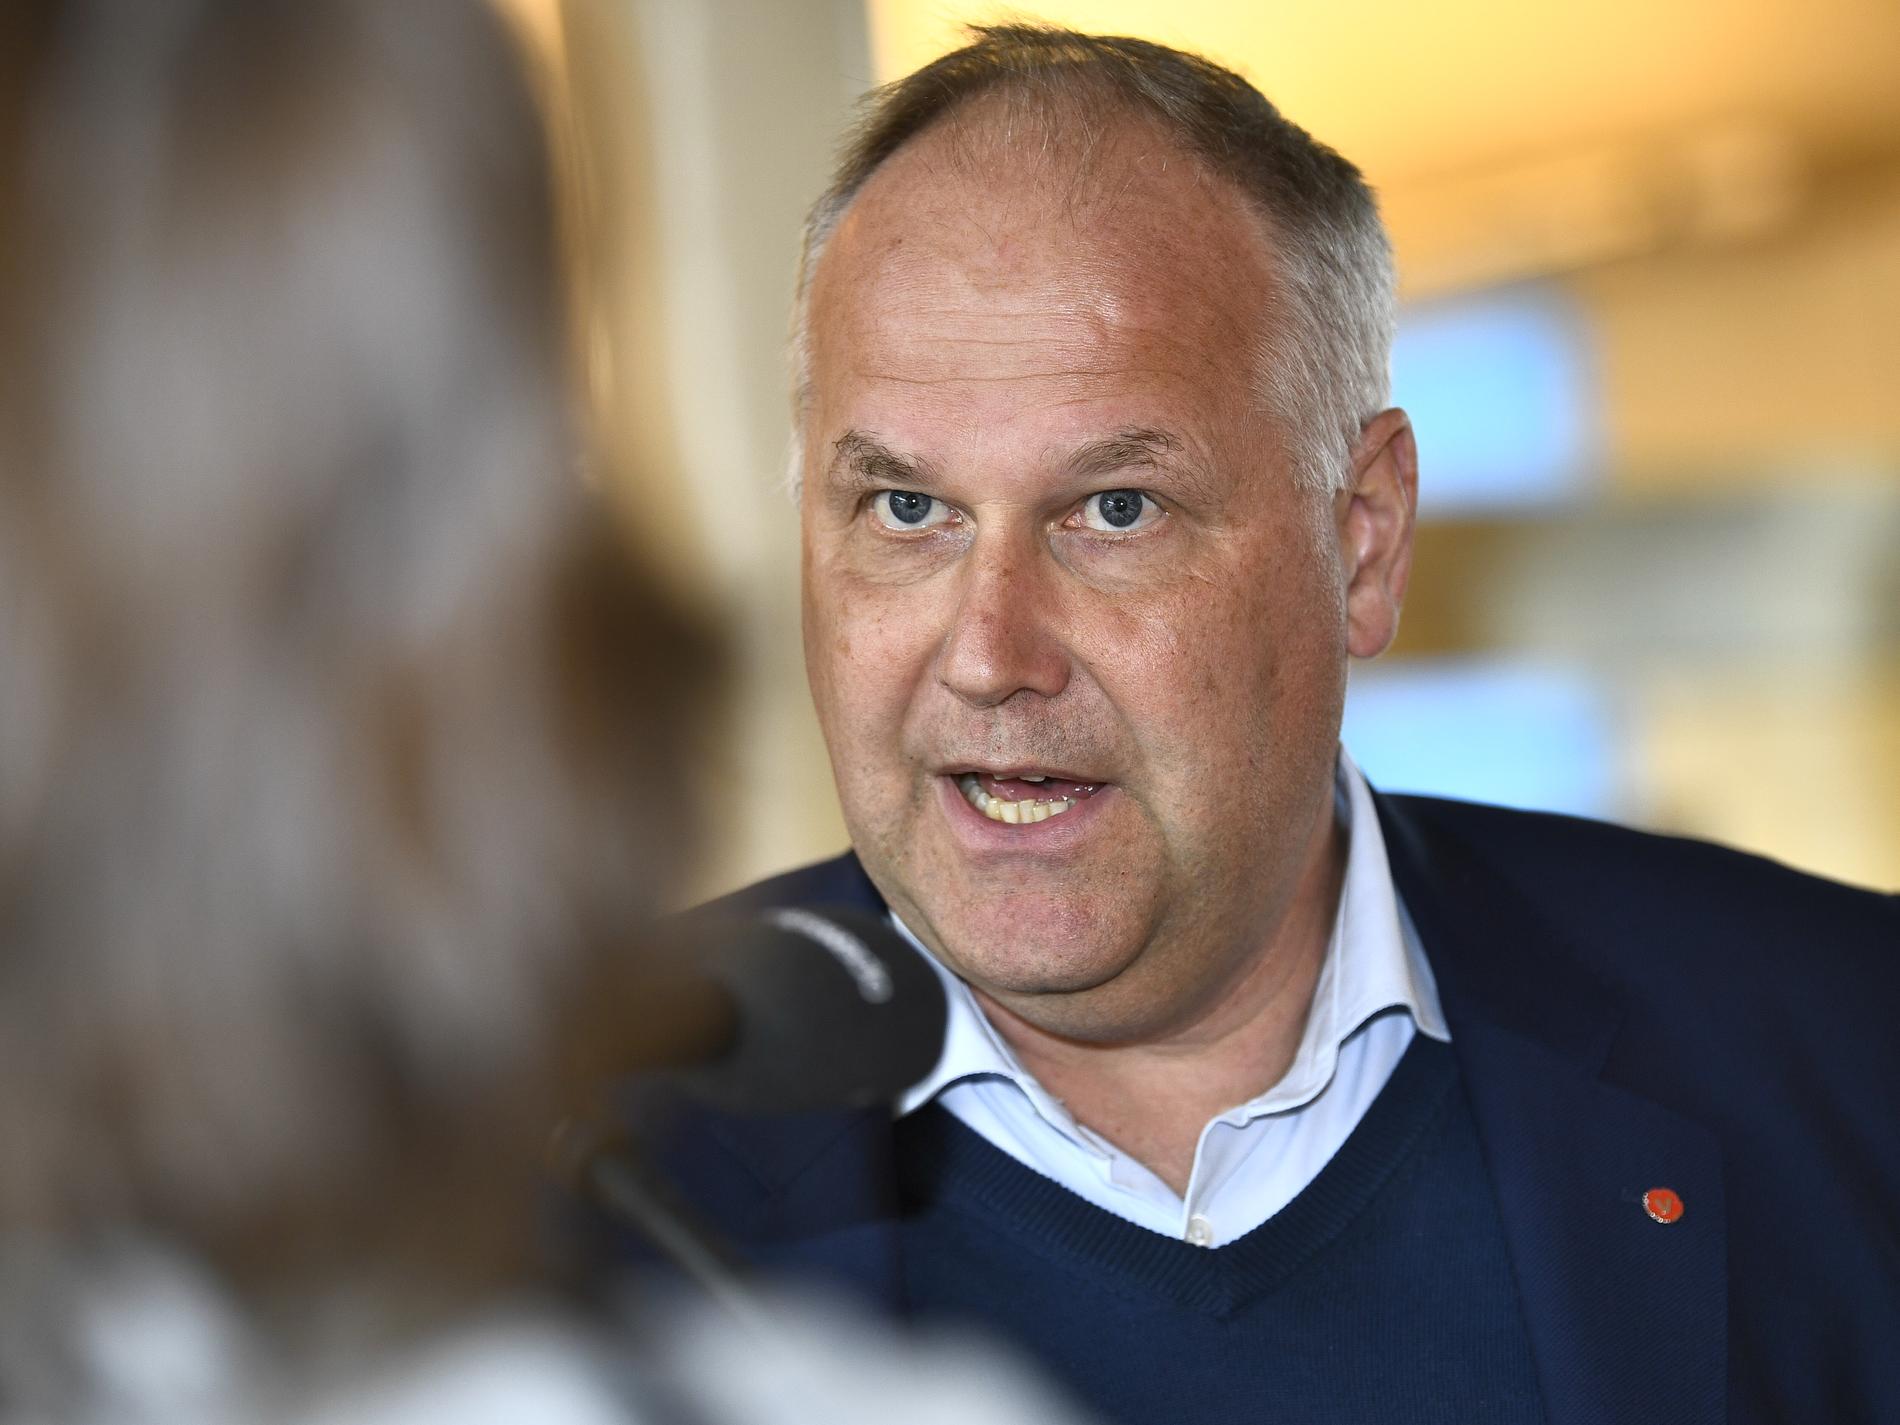 Vänsterpartiets partiledare Jonas Sjöstedt anser att man bör vänta till efter sommaren med en kriskommission.